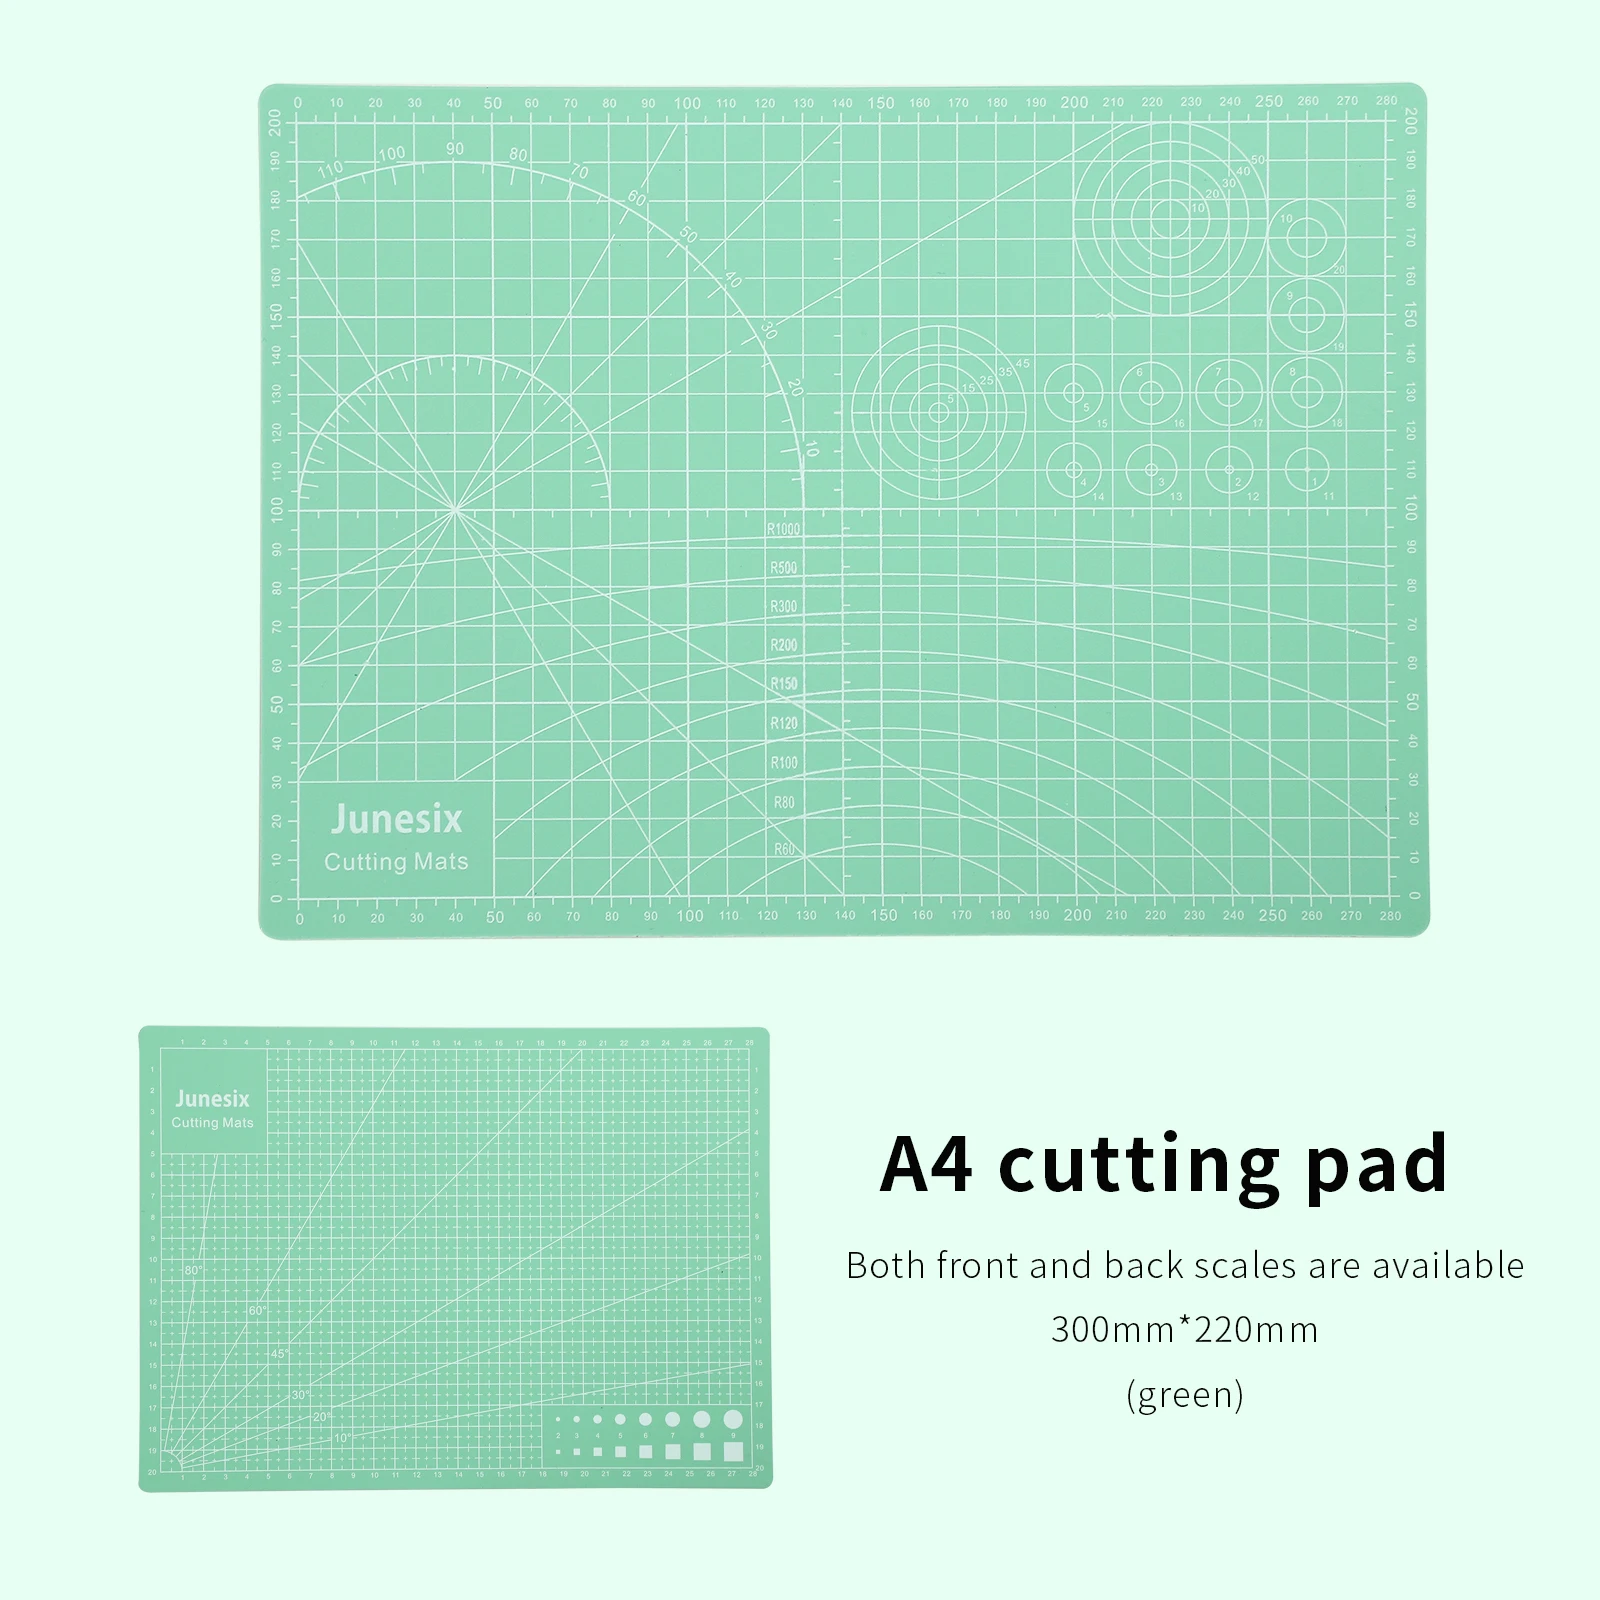 Junesix Cutting Mat A5 Cutting Board Manual Model Cutting Pad